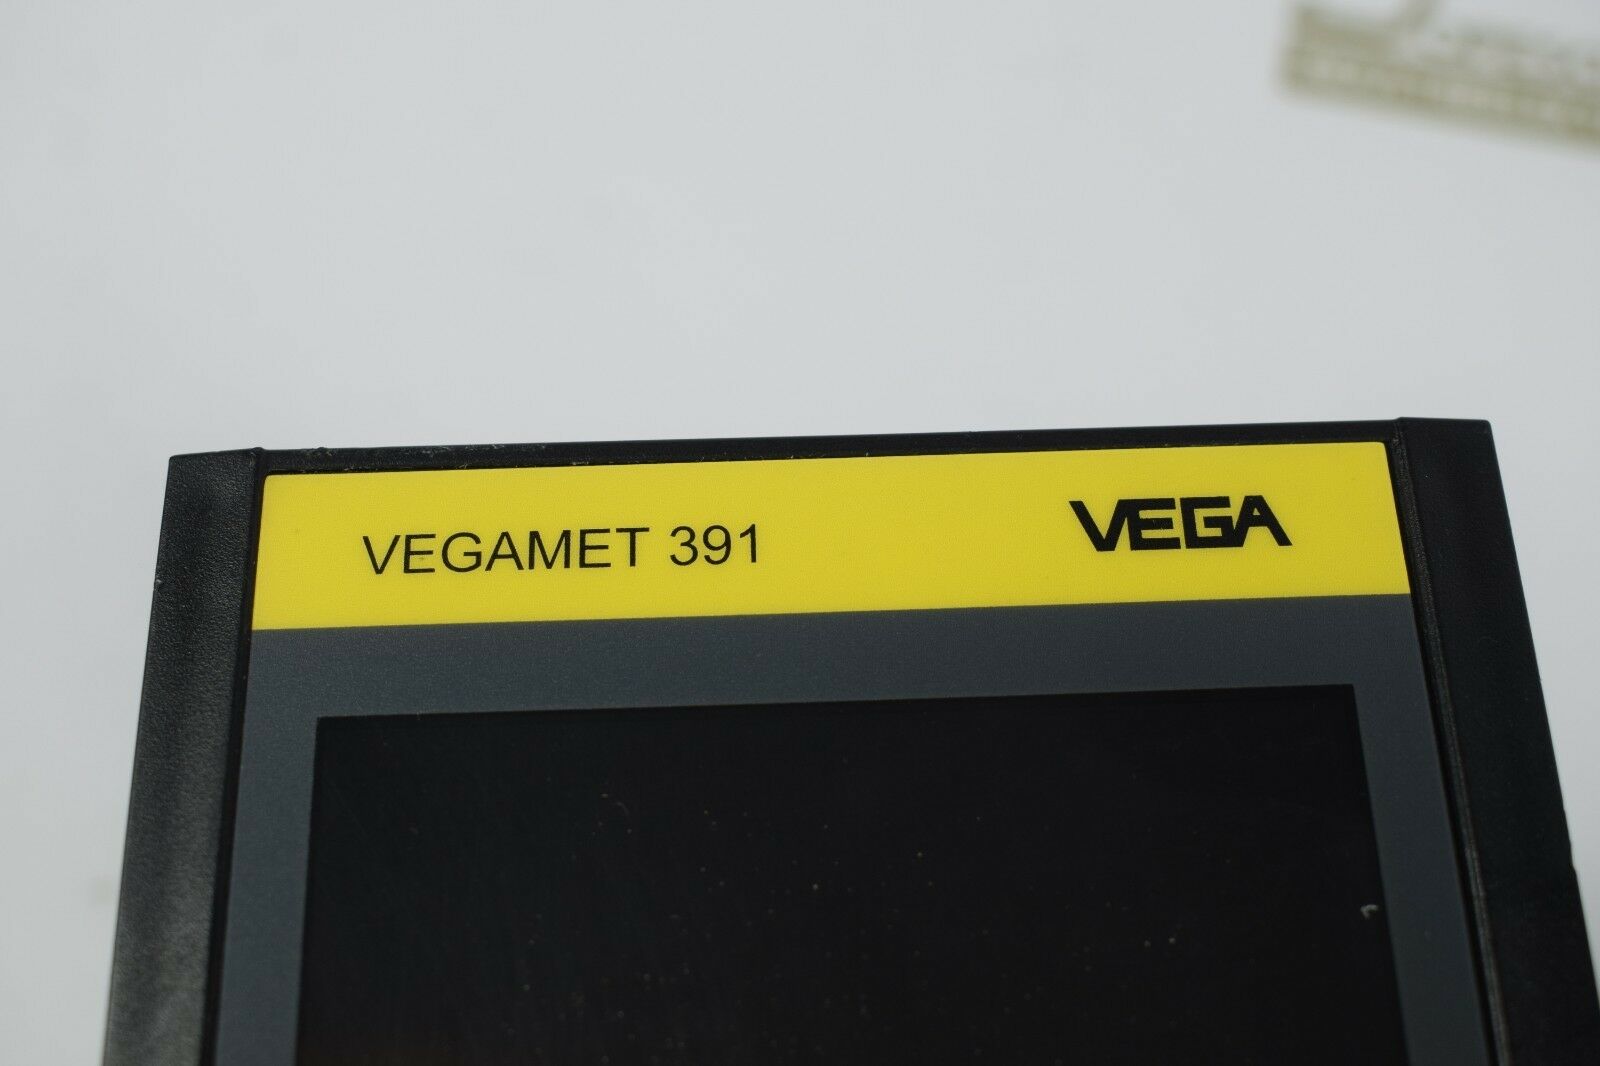 VEGA Vegamet 391 